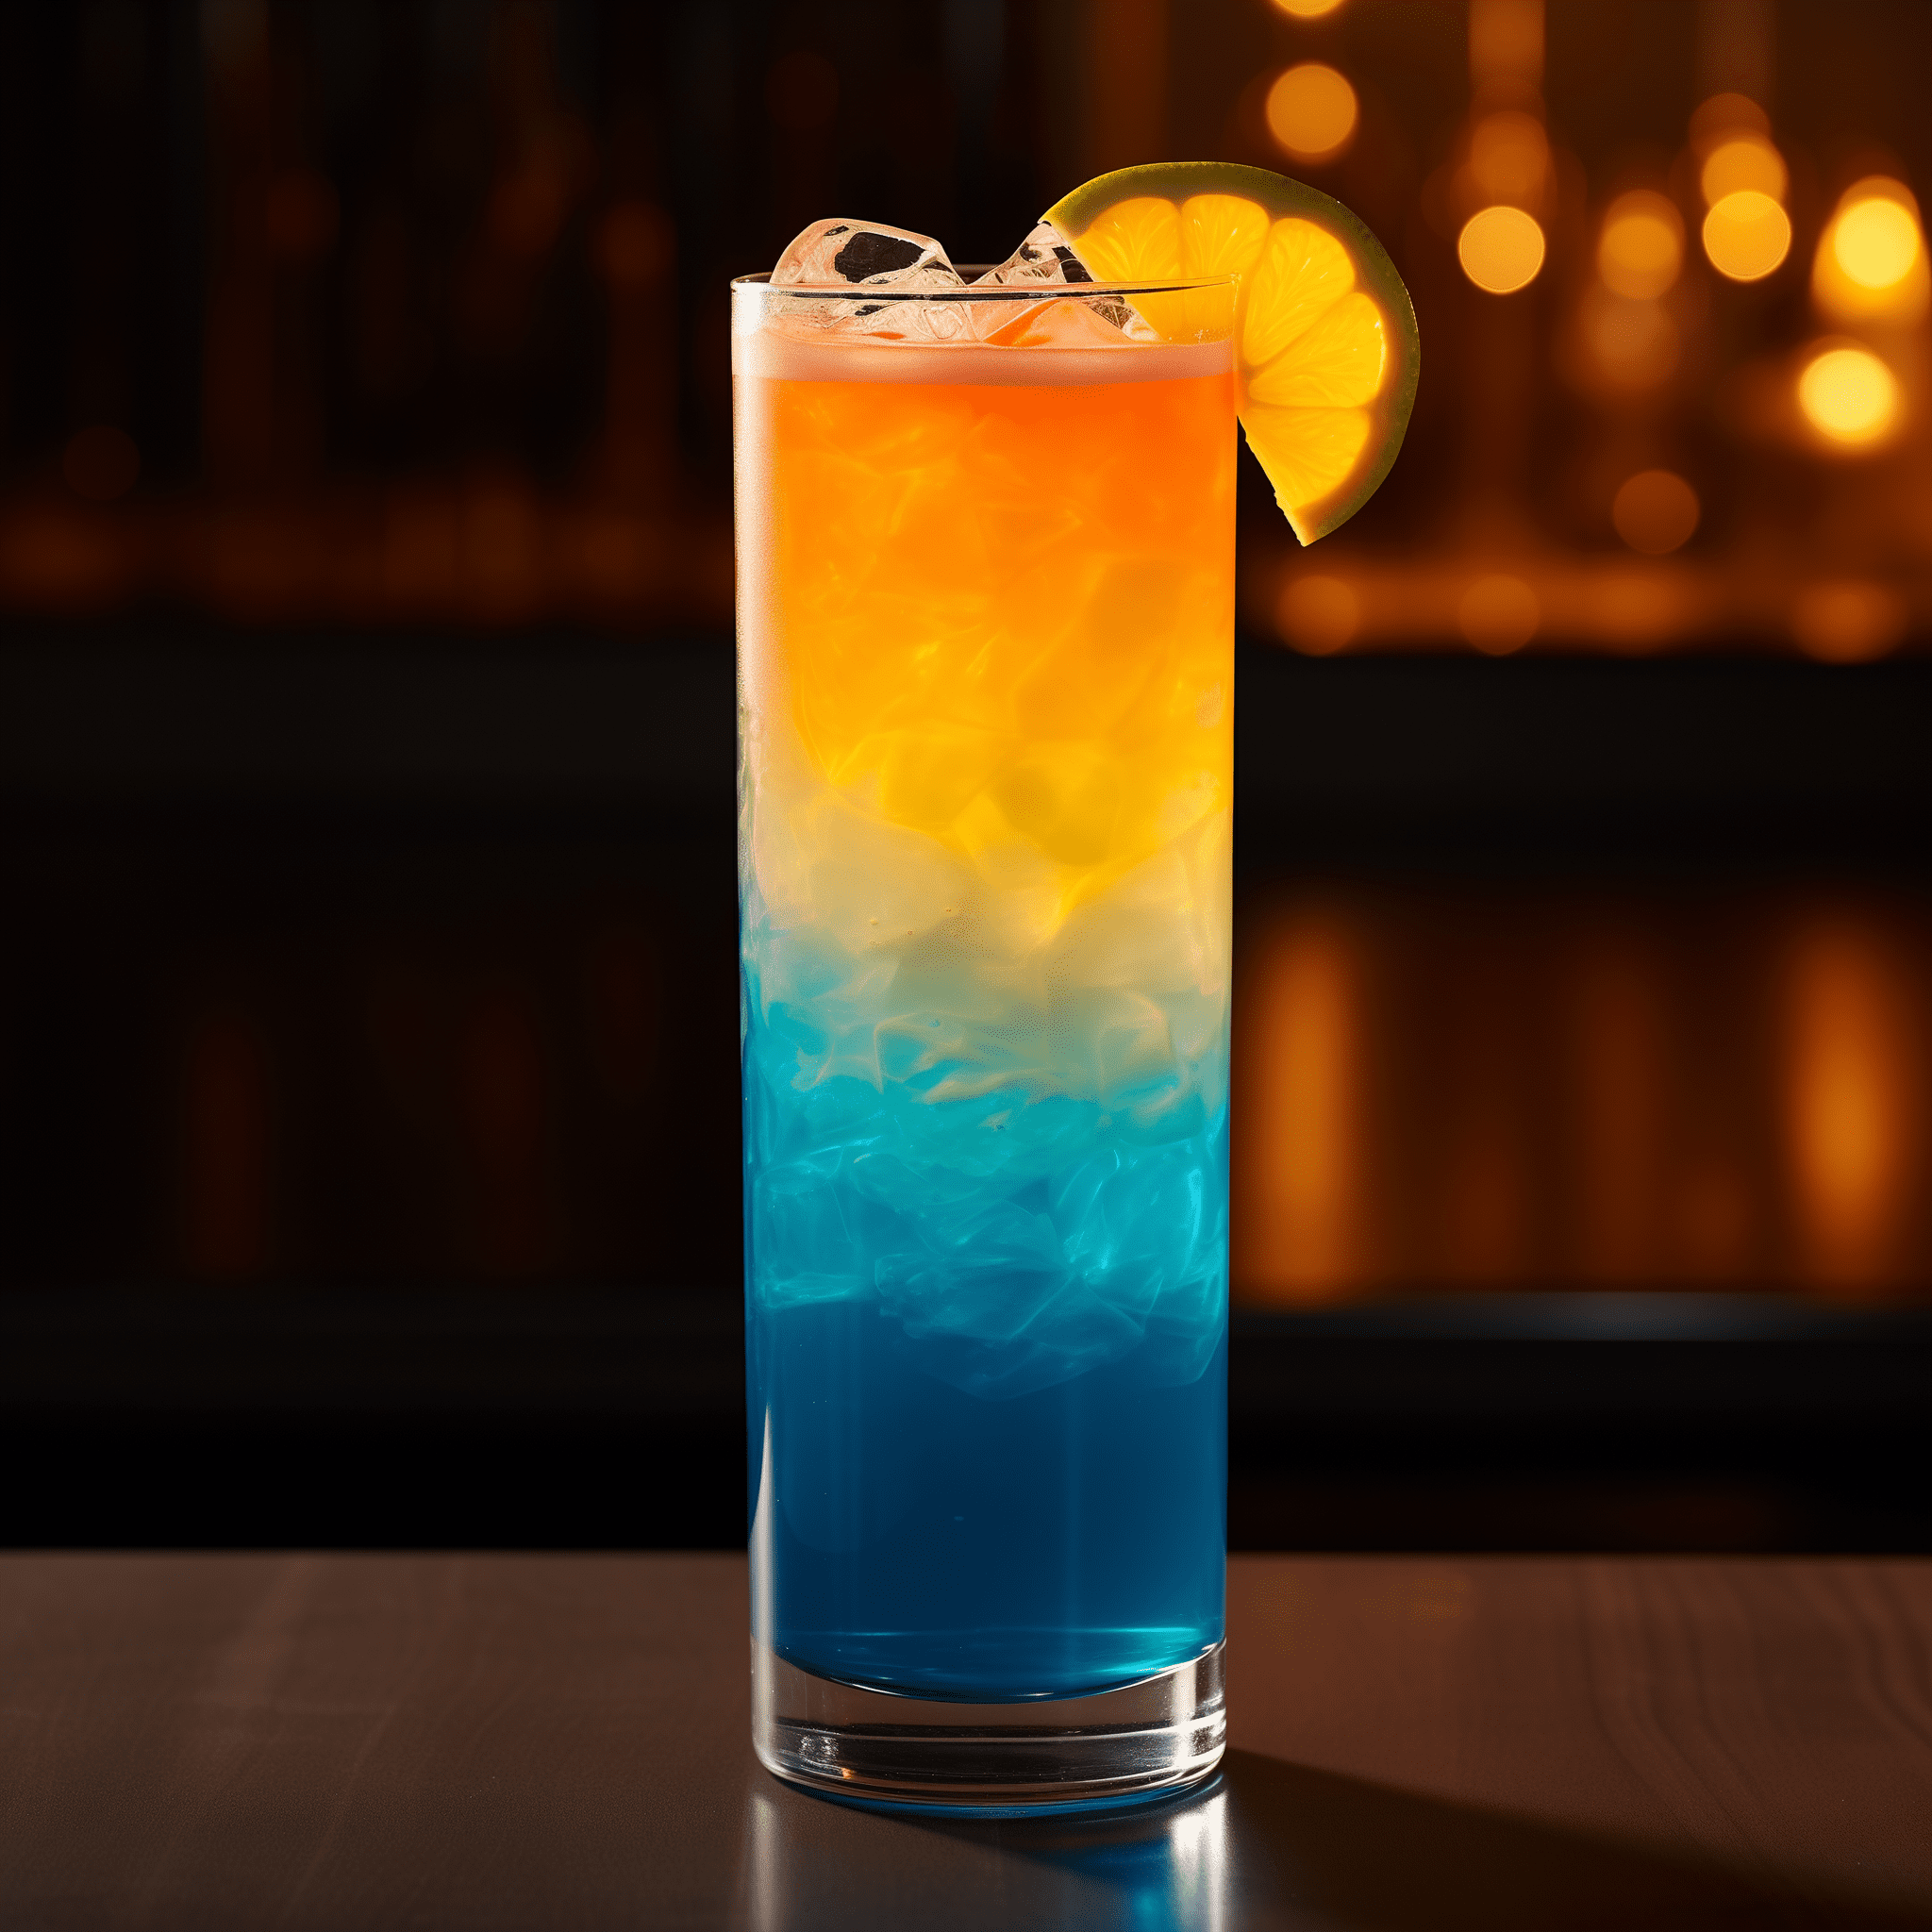 Blue Booty Cóctel Receta - El cóctel Blue Booty es una deliciosa fusión de sabores dulces y picantes, con un fuerte golpe de la combinación de rones blanco y oscuro. El ron Malibu añade un suave matiz de coco, mientras que el curaçao azul aporta una nota cítrica de naranja que complementa los jugos tropicales de piña y naranja. Es una bebida fuerte pero equilibrada con un sabor afrutado y refrescante.